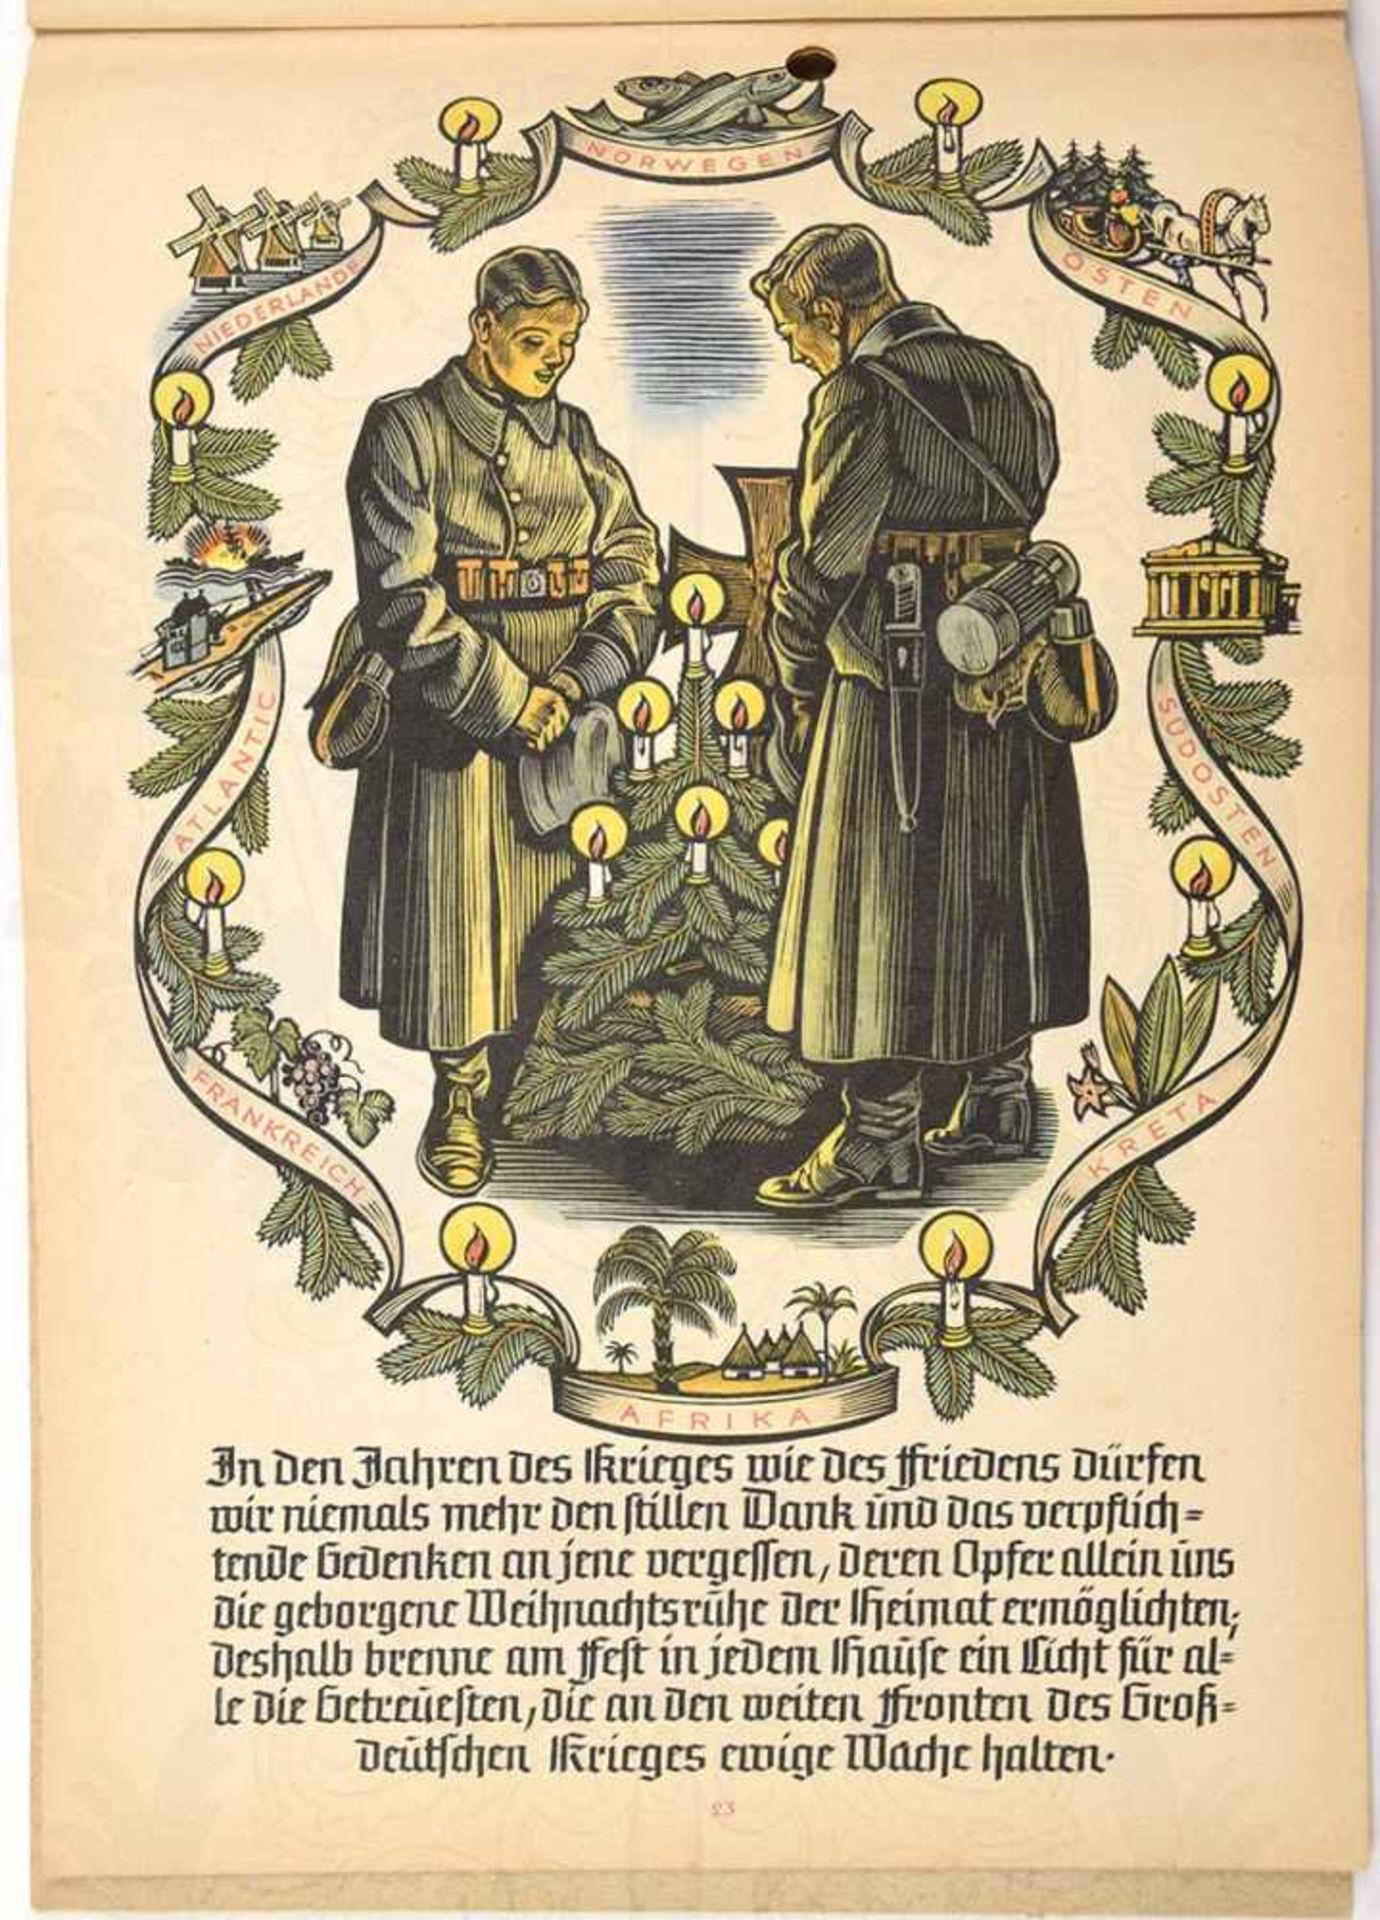 VORWEIHNACHTEN, Sonderdruck v. Amt f. Schulungsbriefe d. NSDAP, 1941, zahlr. farb. Abb. z. - Bild 2 aus 3